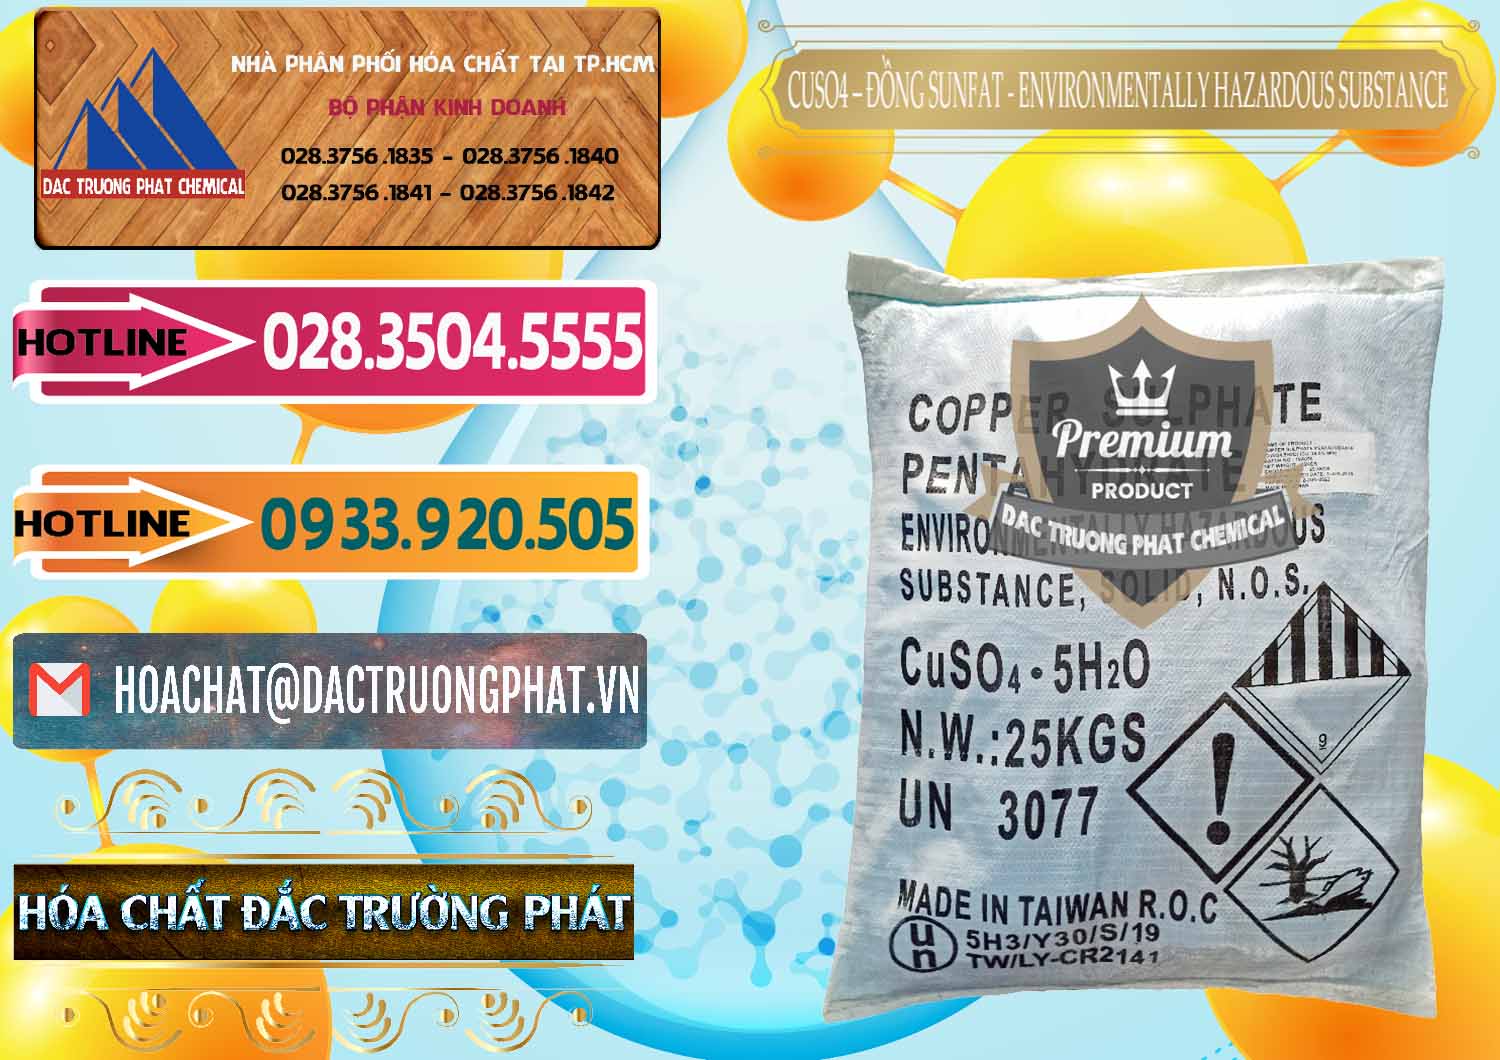 Công ty chuyên bán _ phân phối CuSO4 – Đồng Sunfat Đài Loan Taiwan - 0059 - Nơi cung cấp ( phân phối ) hóa chất tại TP.HCM - dactruongphat.vn